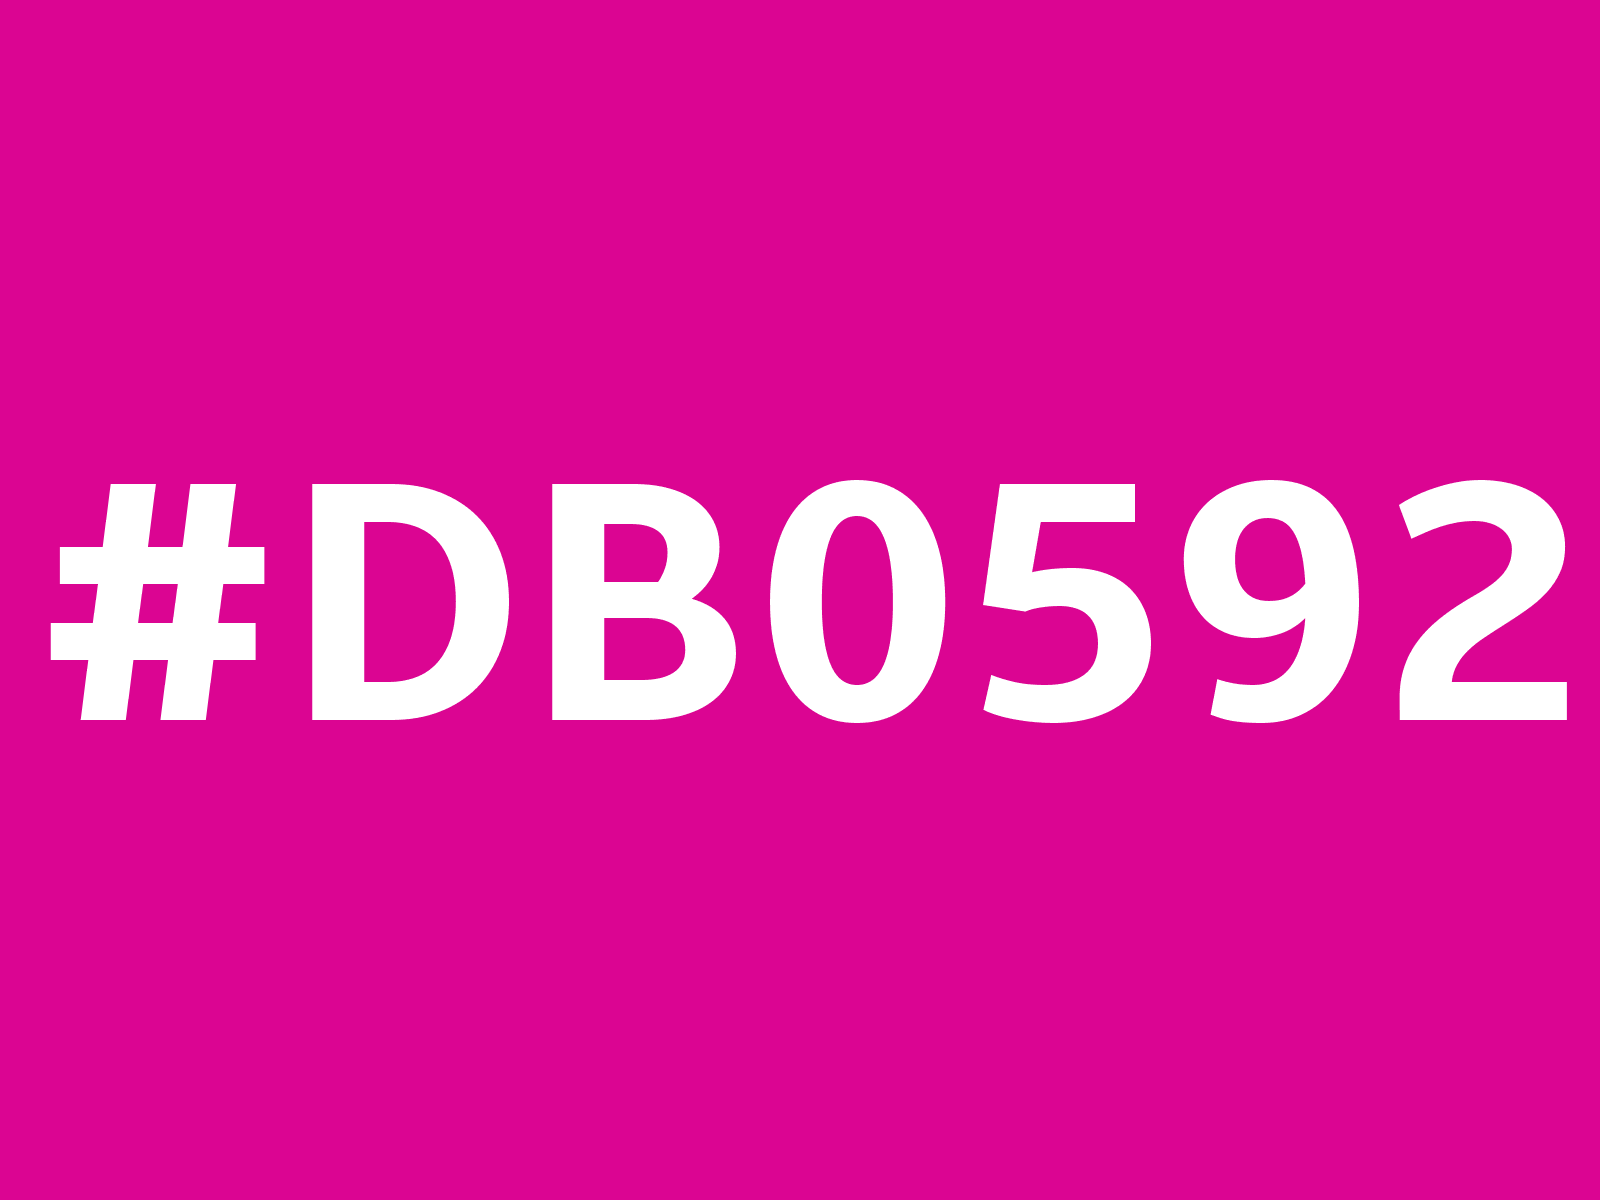 db0592